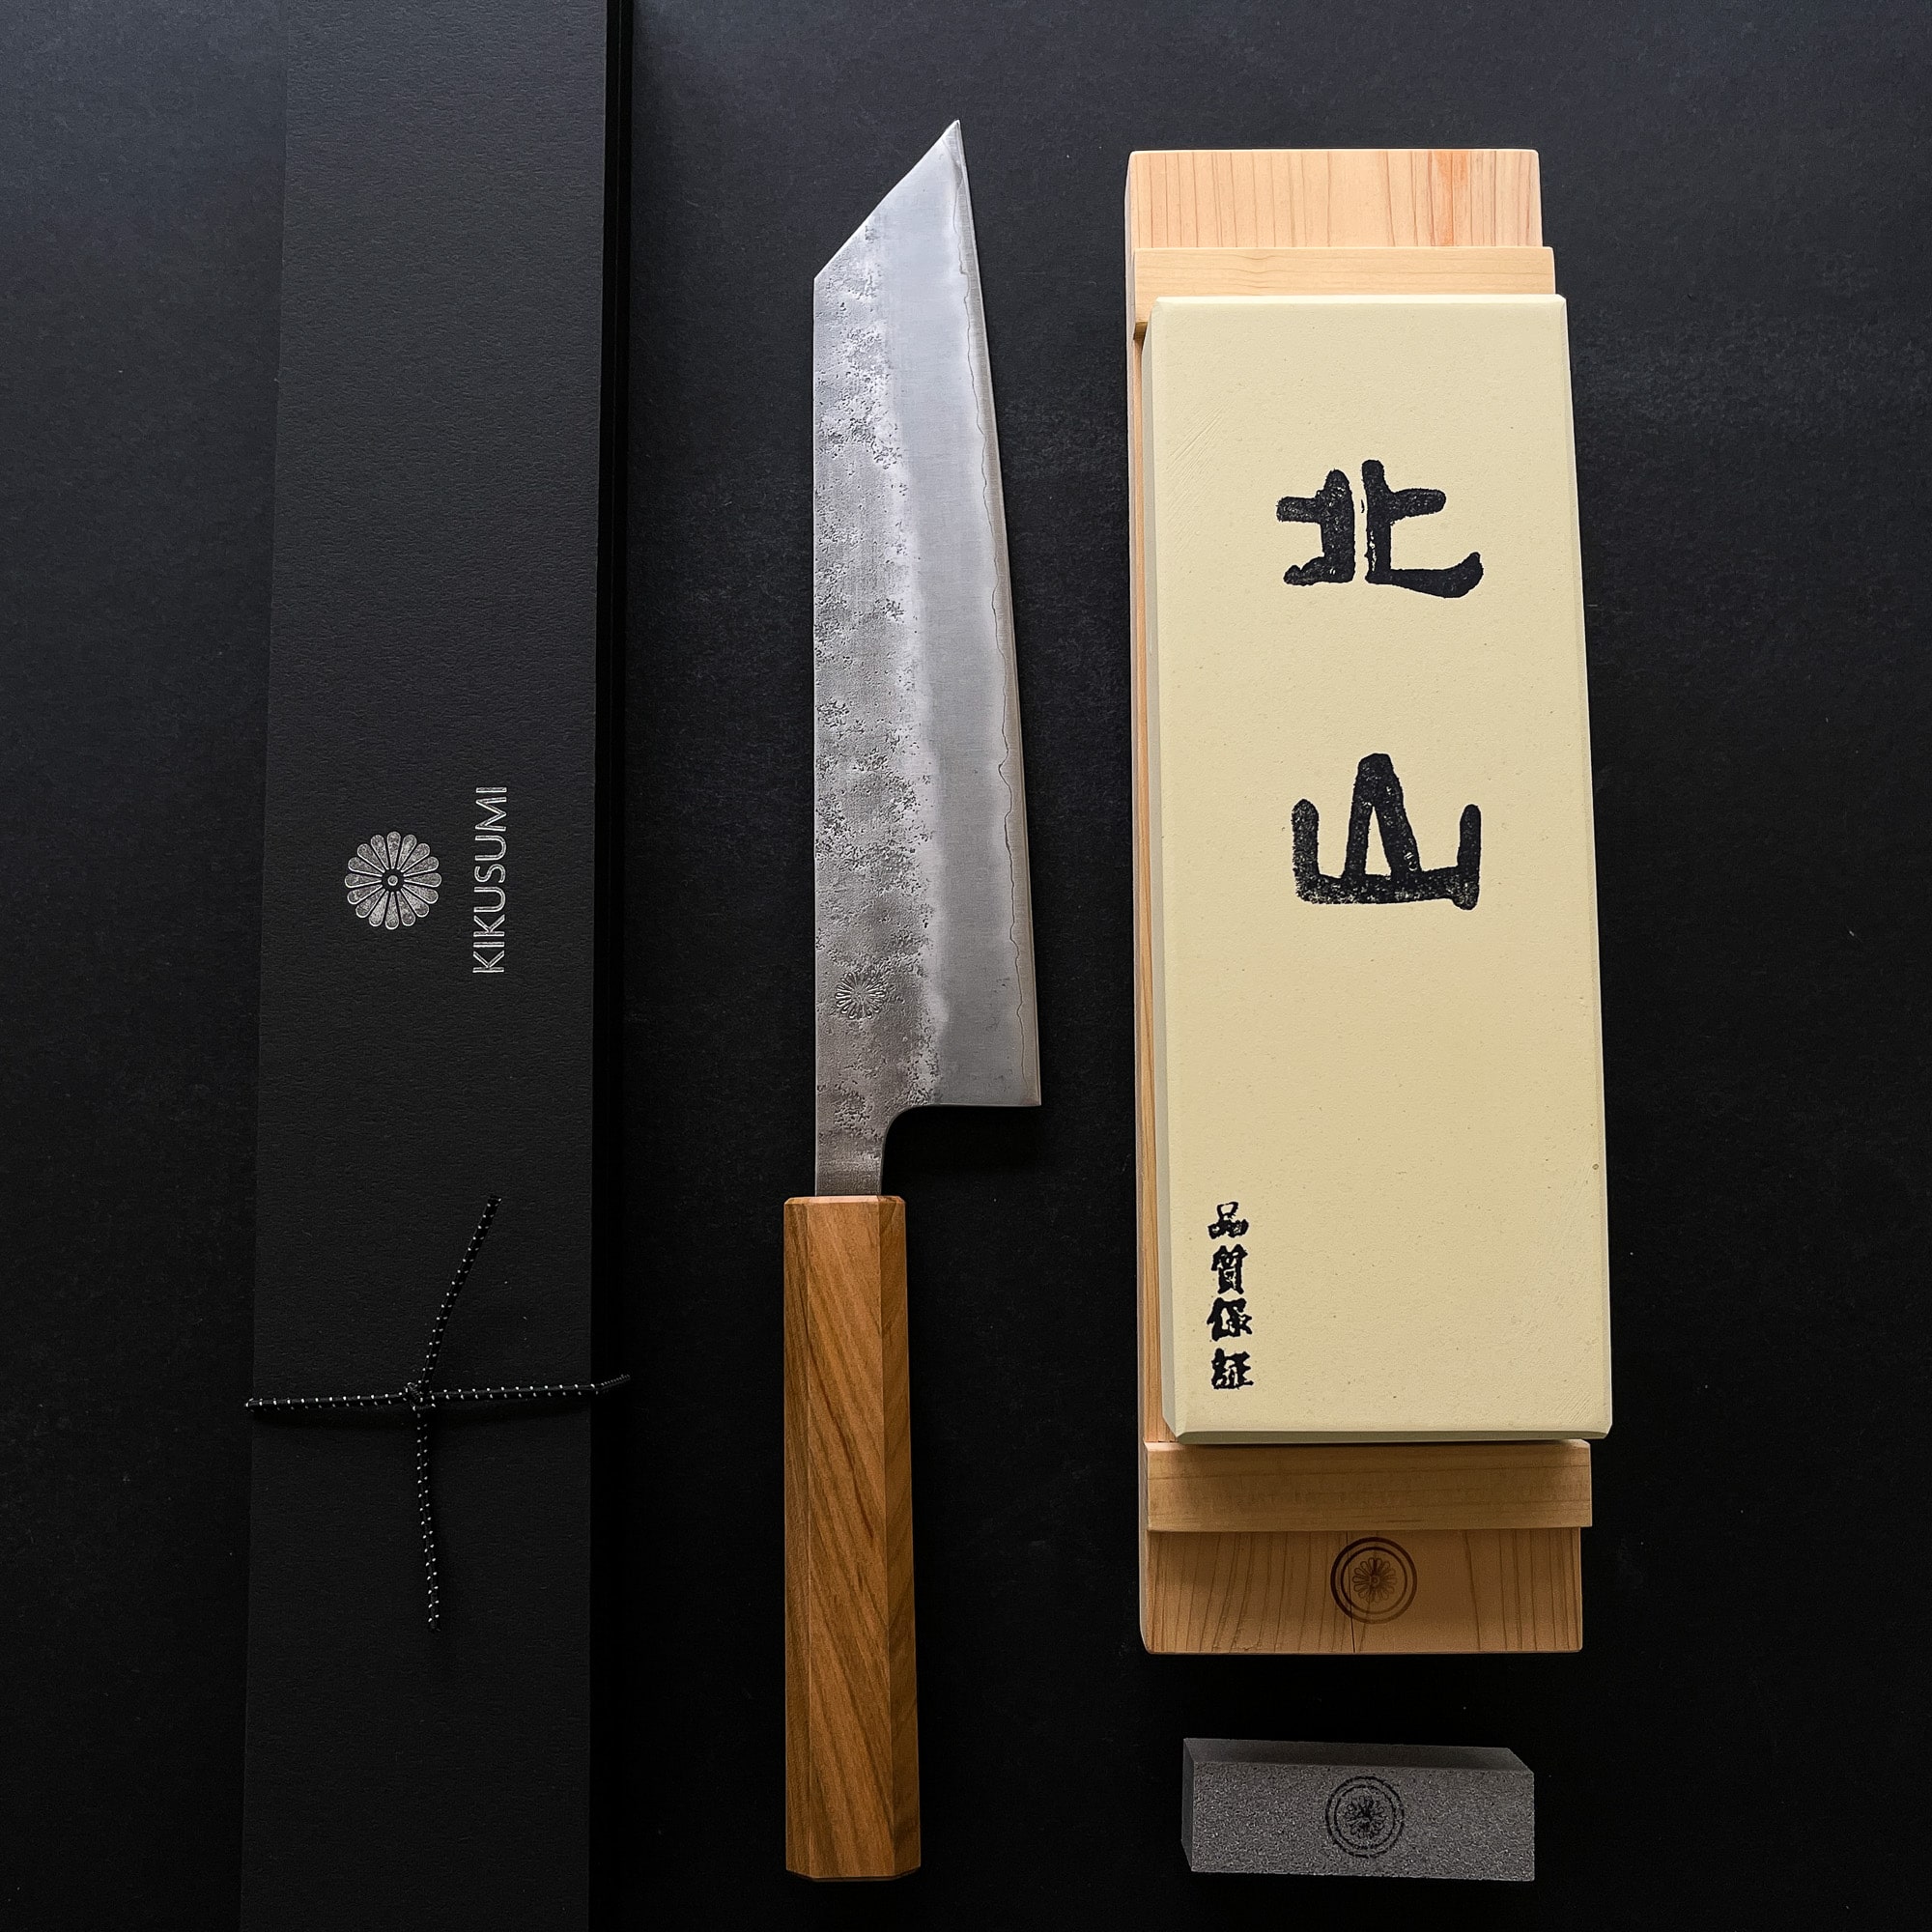 EANINNO Japanese Chef Knife 8 inch Gyuto Kiritsuke Kitchen Knife